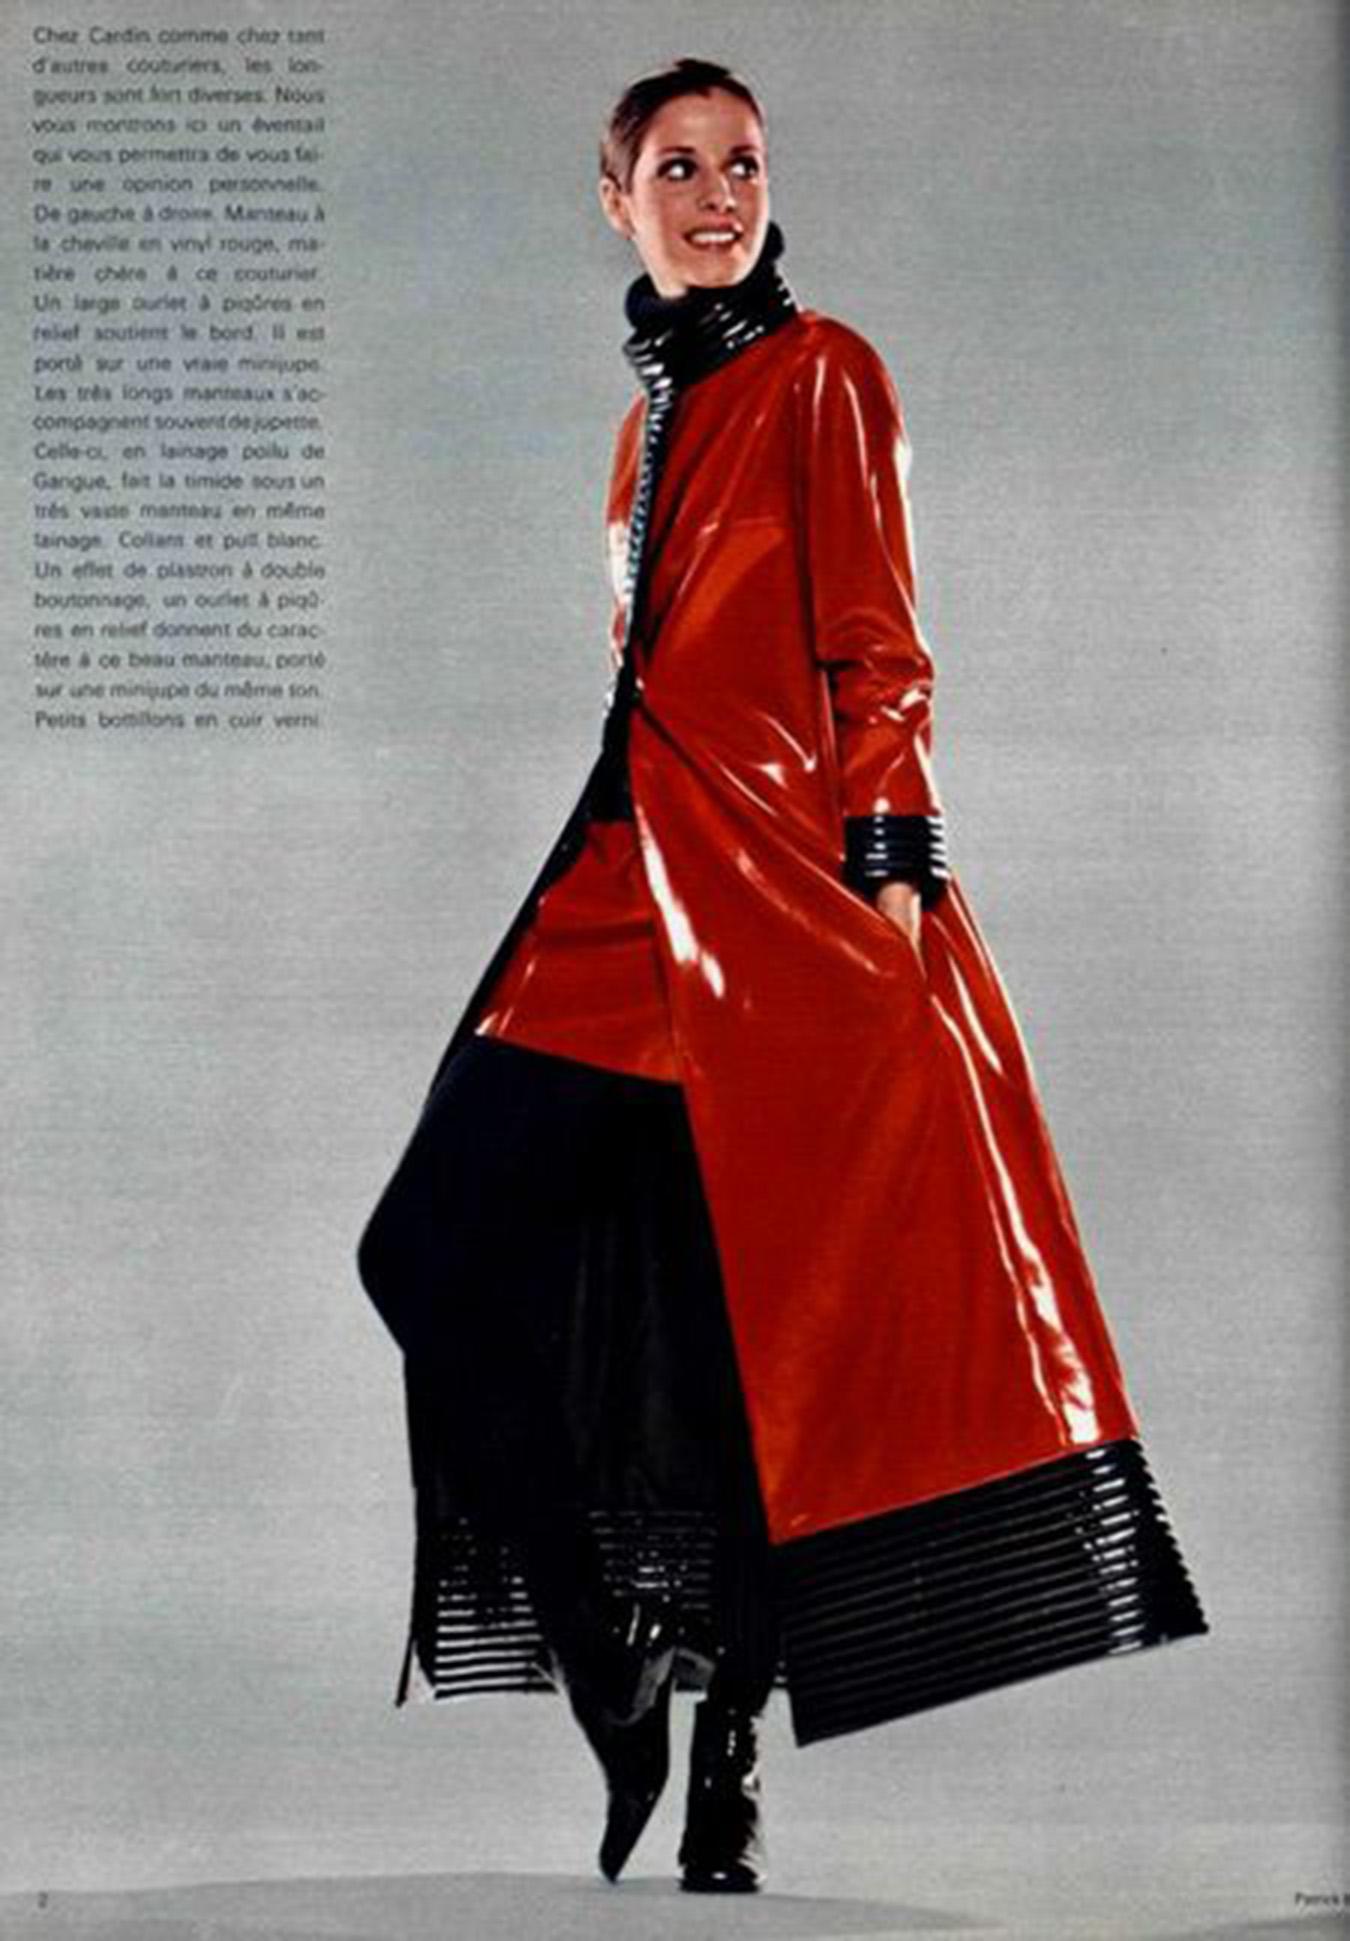 Un manteau modulaire maxi longueur en vinyle rouge et noir de Pierre Cardin, absolument iconique et bien documenté, datant de sa collection épique automne/hiver 1969-70. Cette pièce d'archive a fait l'objet d'un éditorial d'une page entière dans le